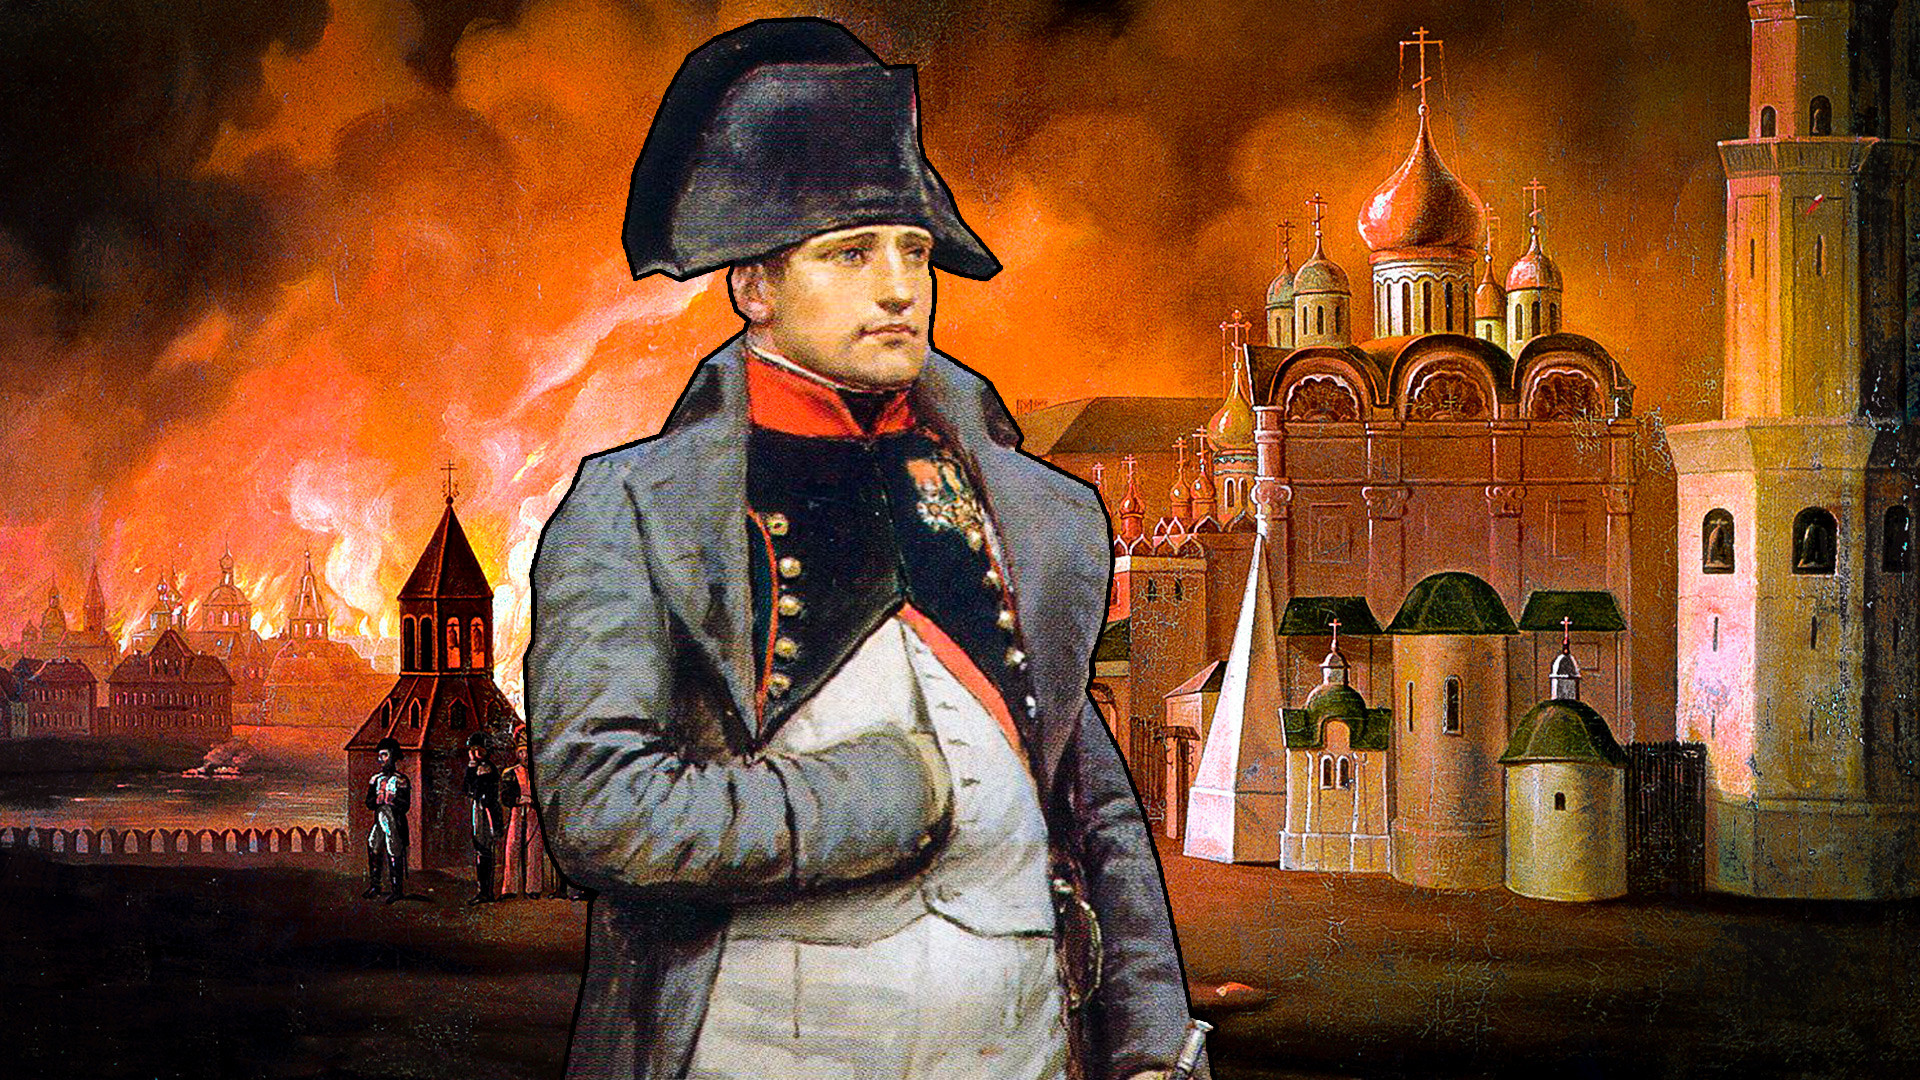 ナポレオン以外にモスクワを占領したのは誰 侵略 放火 殺戮 ロシア ビヨンド